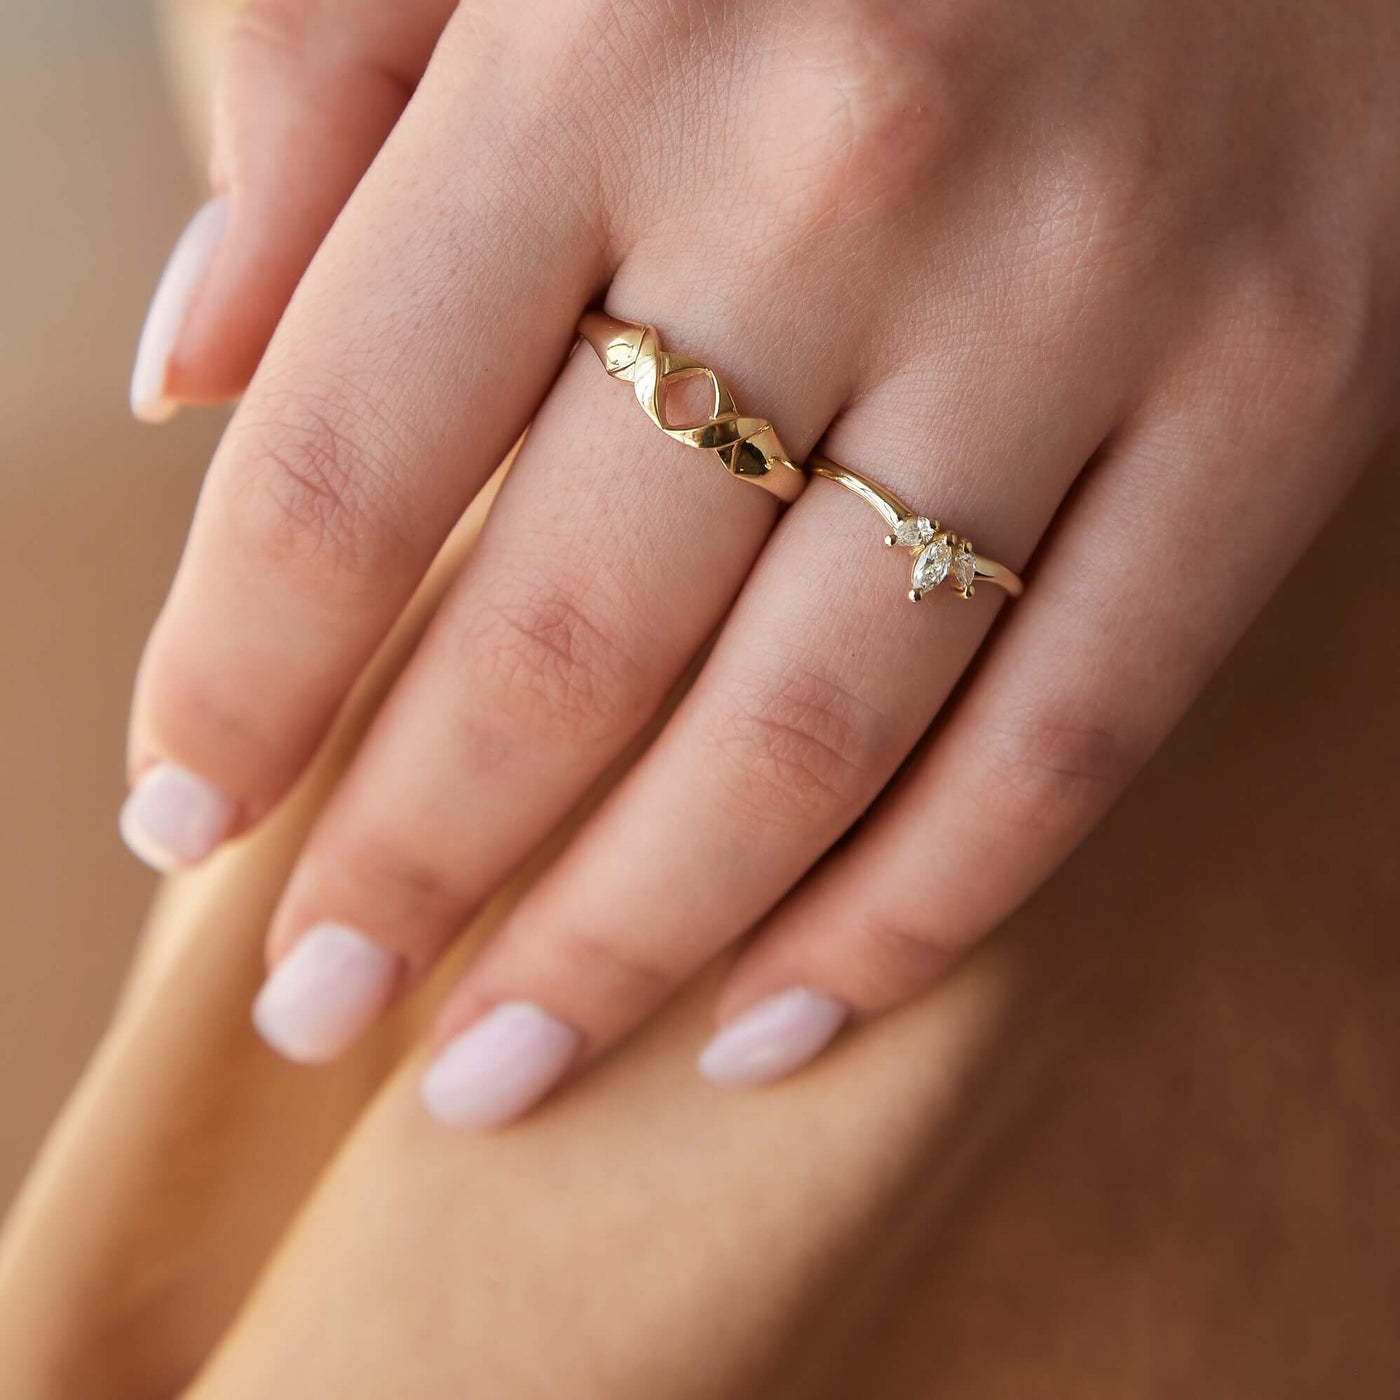 טבעת לואיז יהלומים לבנים זהב 14K Rings 